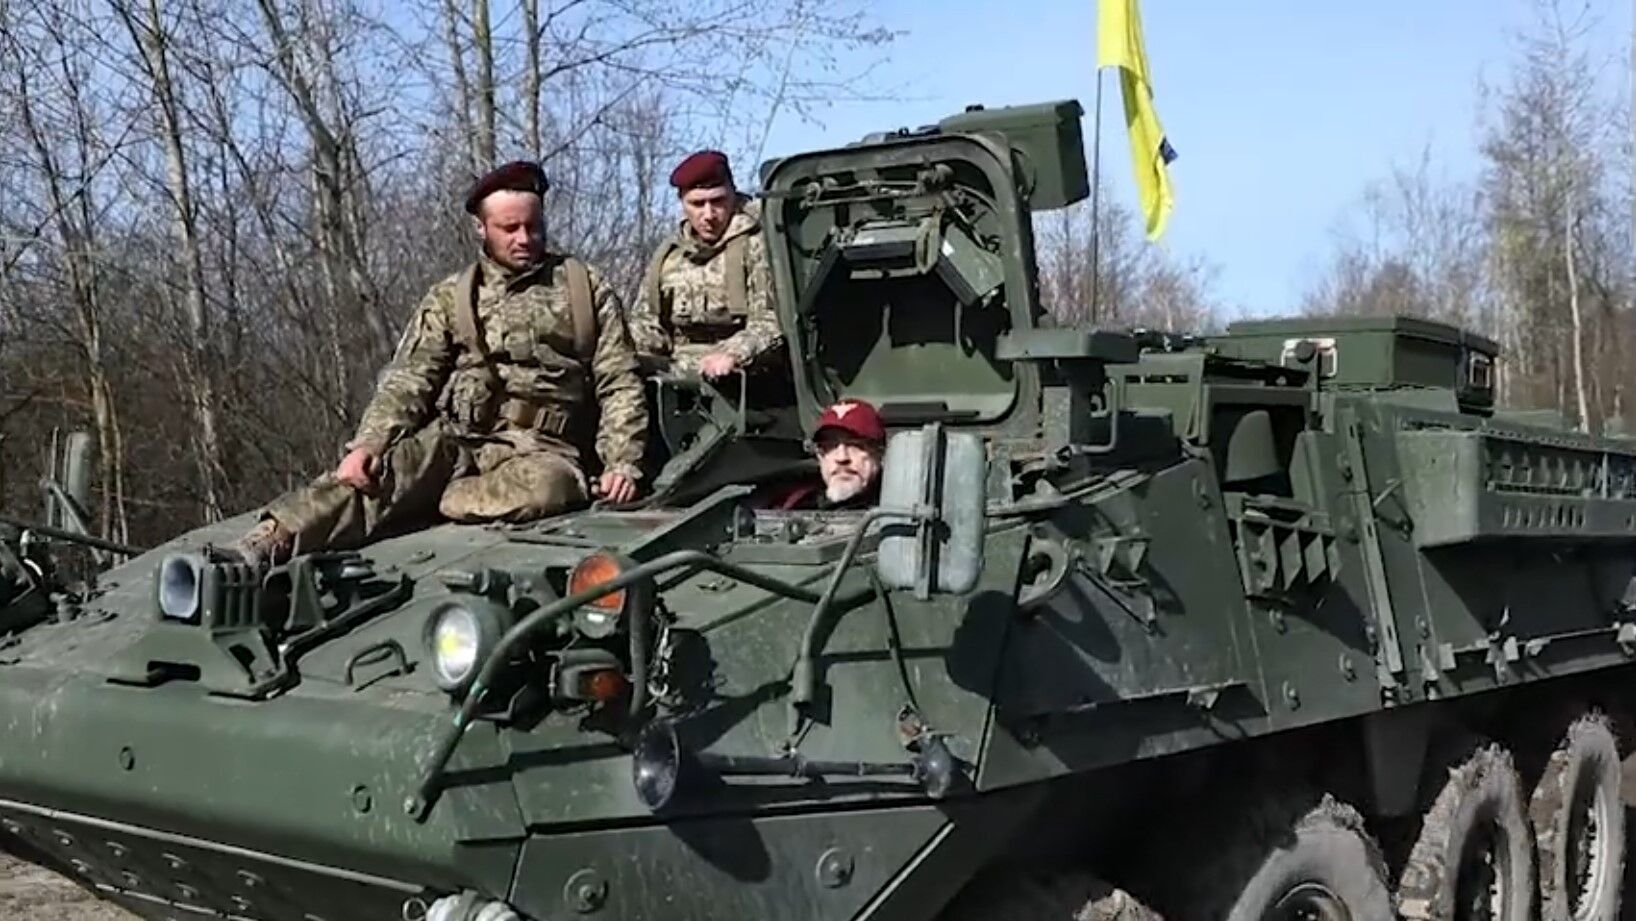 Резников с украинскими десантниками "обкатали" очередную партию западной военной техники: Strykers и Cougars в умелых руках. Видео